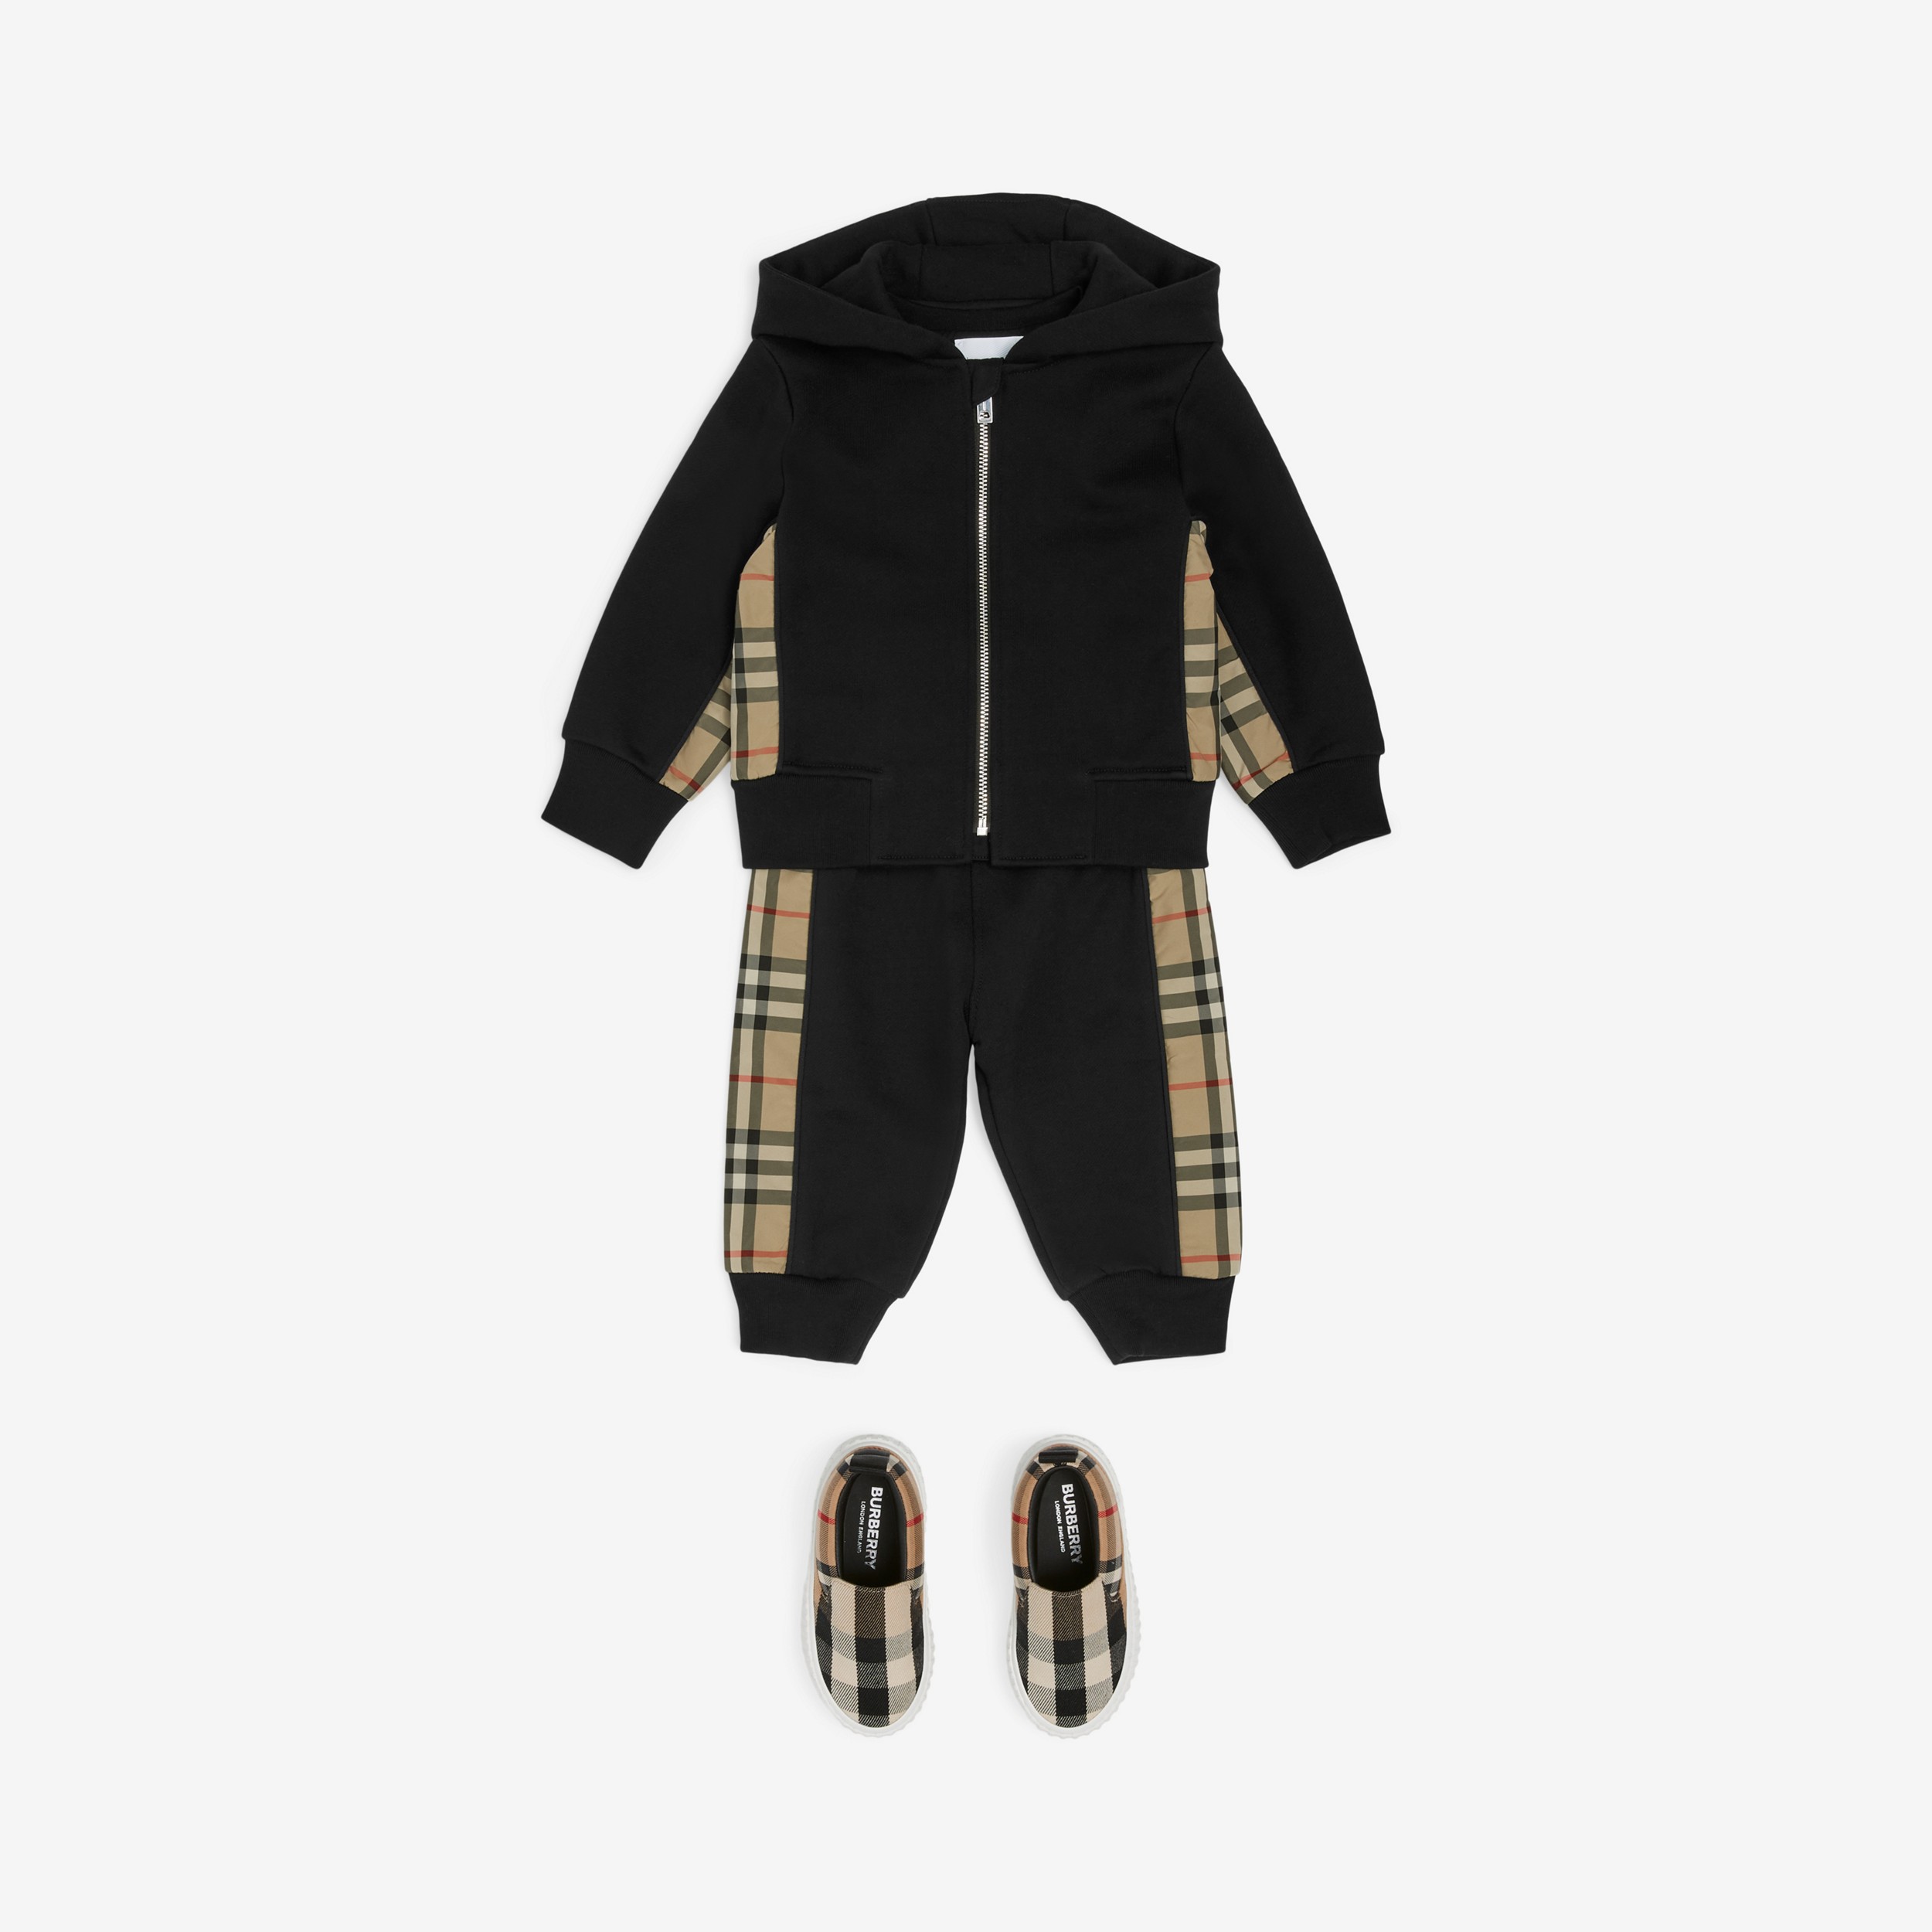 Sudadera en algodón con cremallera, capucha y paneles Check (Negro) - Niños | Burberry® oficial - 4